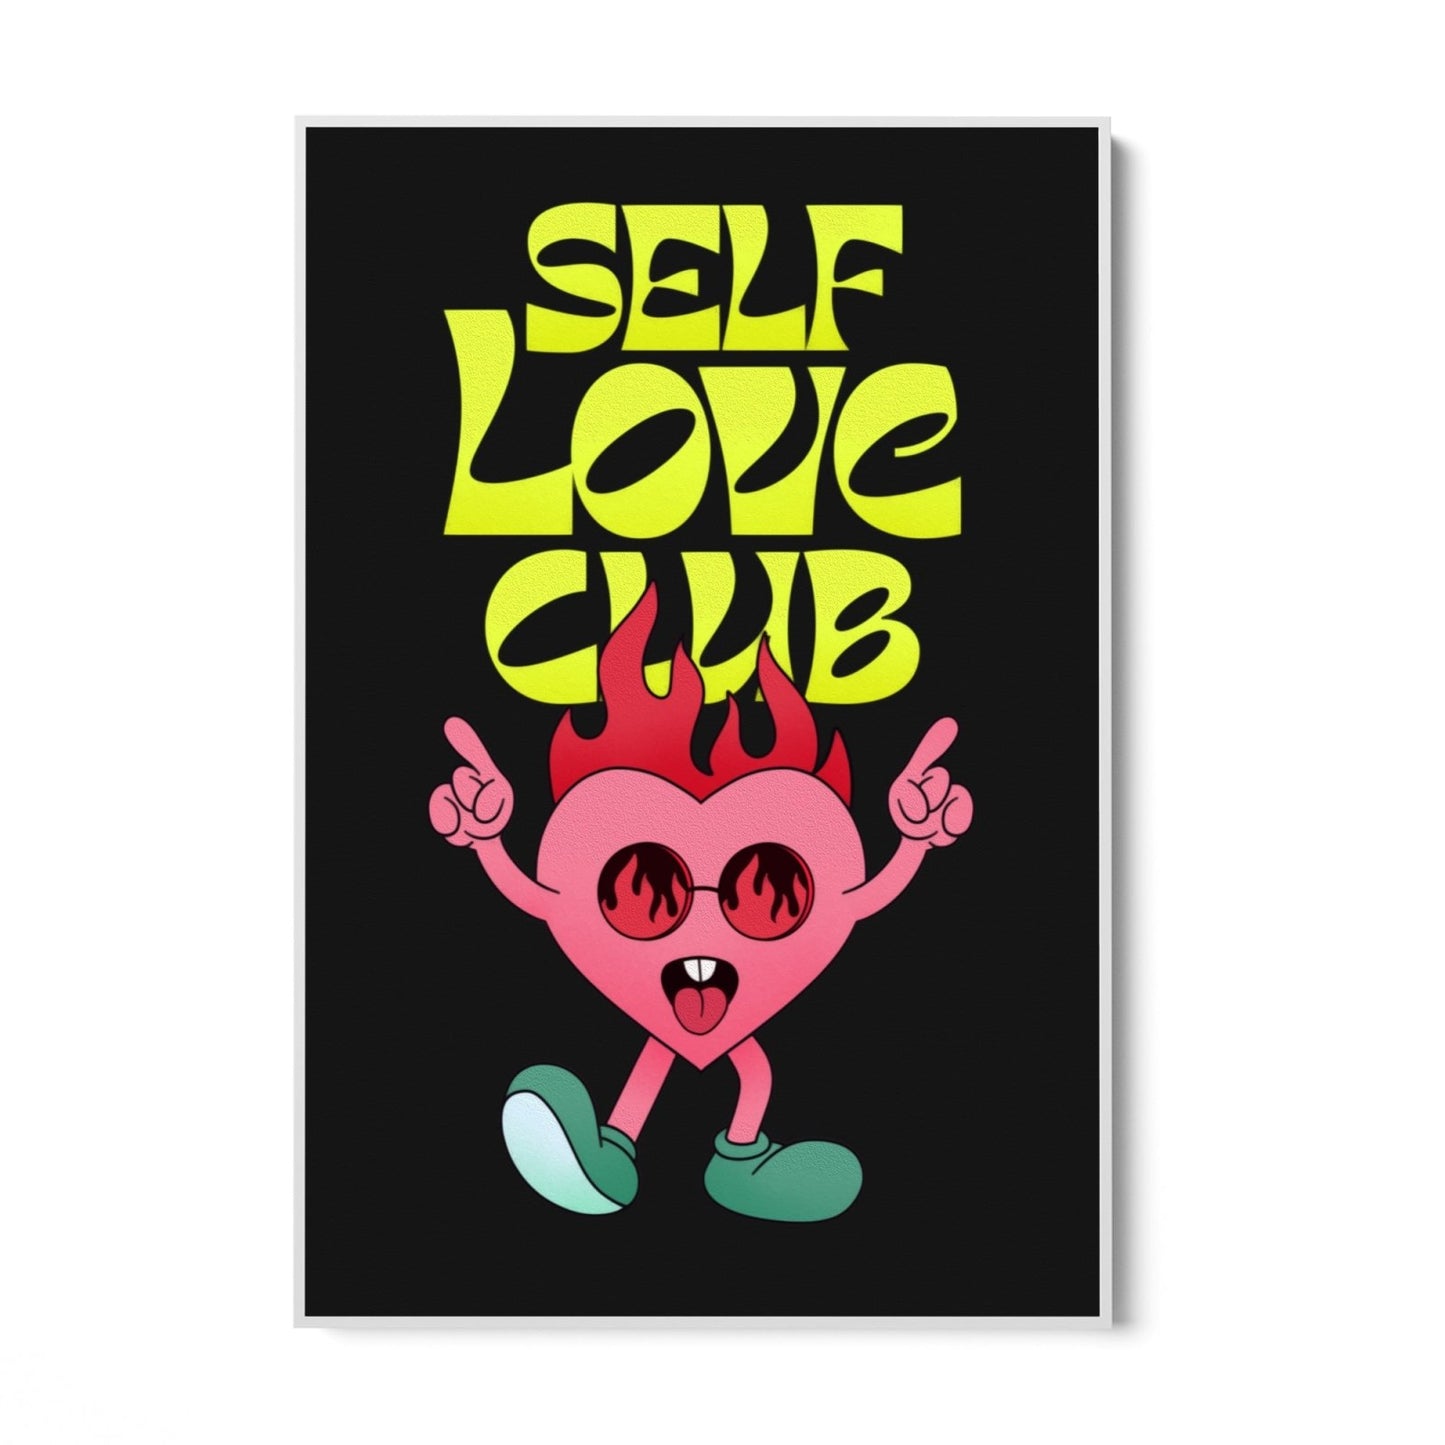 Club d'amour de soi